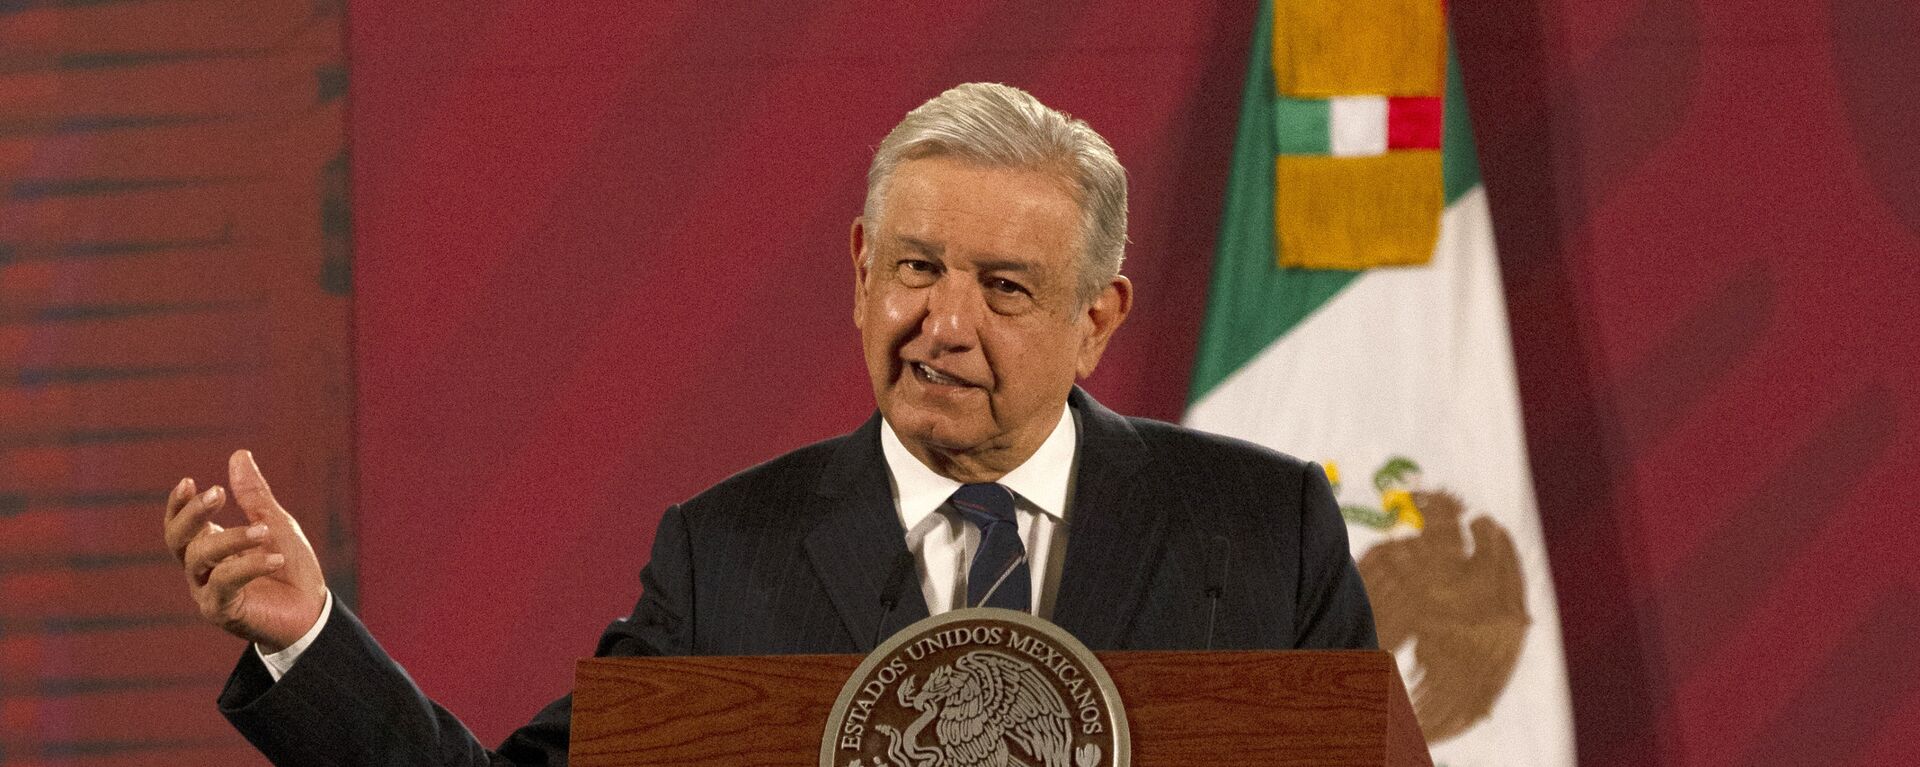 Andrés Manuel López Obrador, presidente de México - Sputnik Mundo, 1920, 28.11.2020